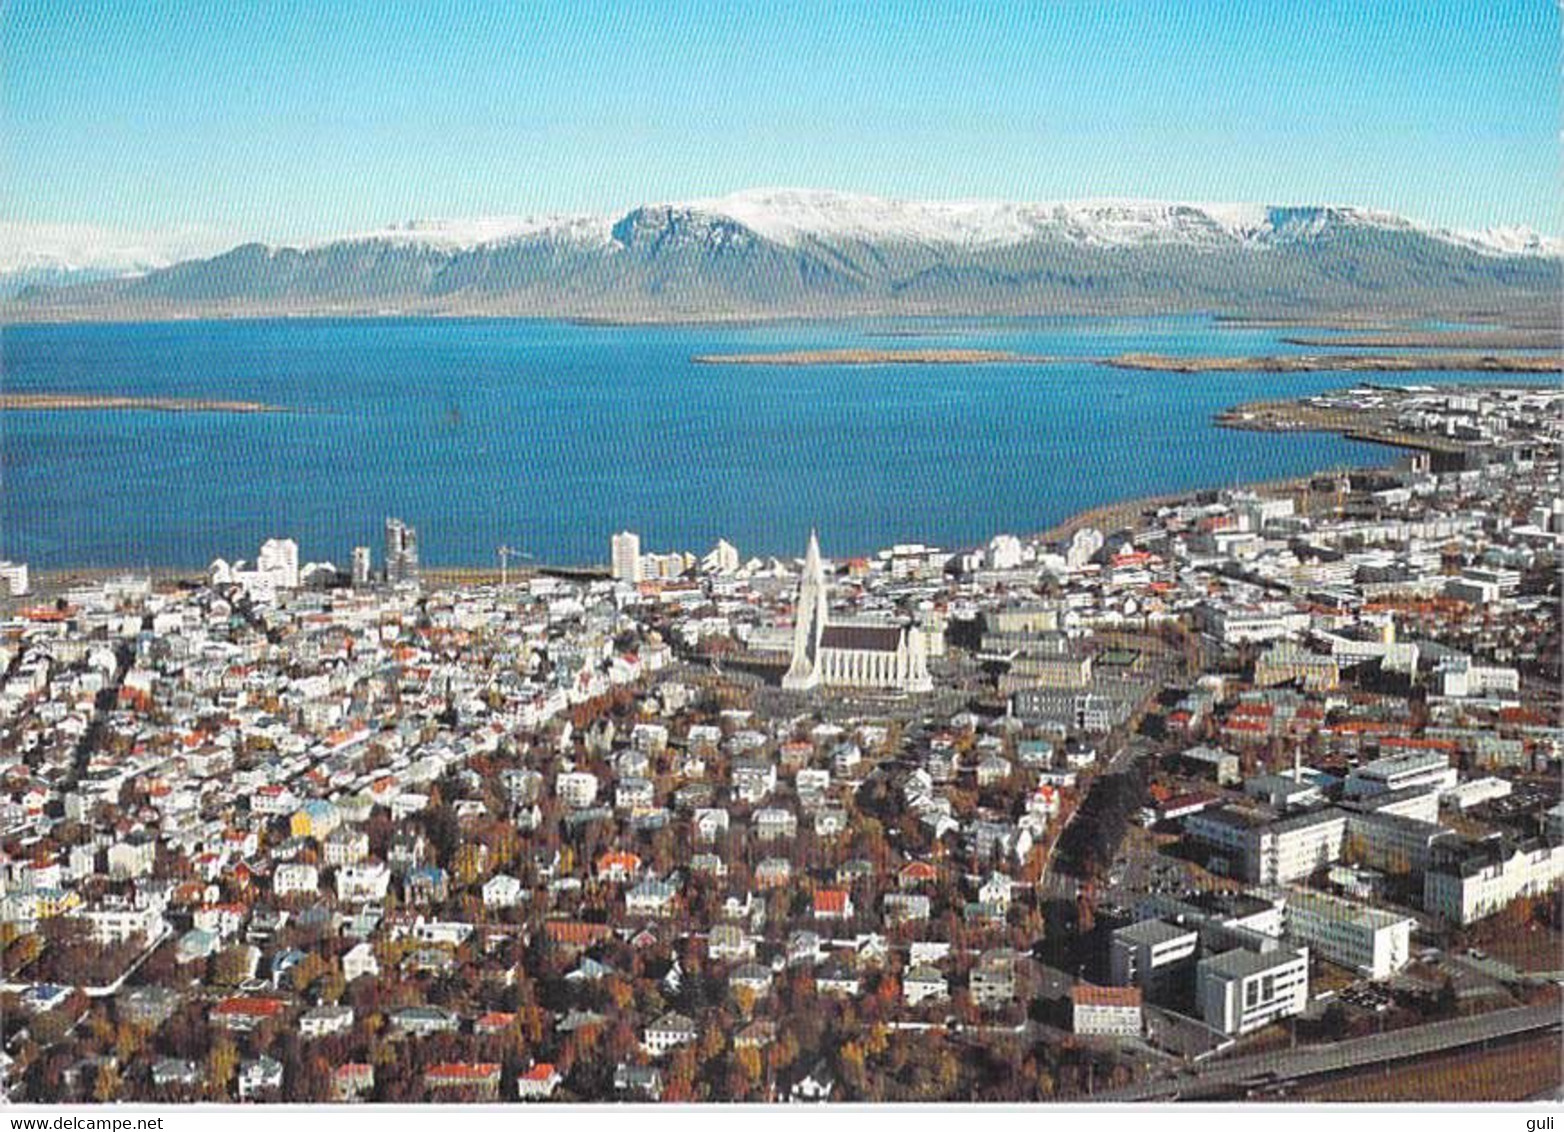 ISLANDE Iceland REYKJAVIK View Over City (philatélie Timbre Stamp ISLAND) - Iceland